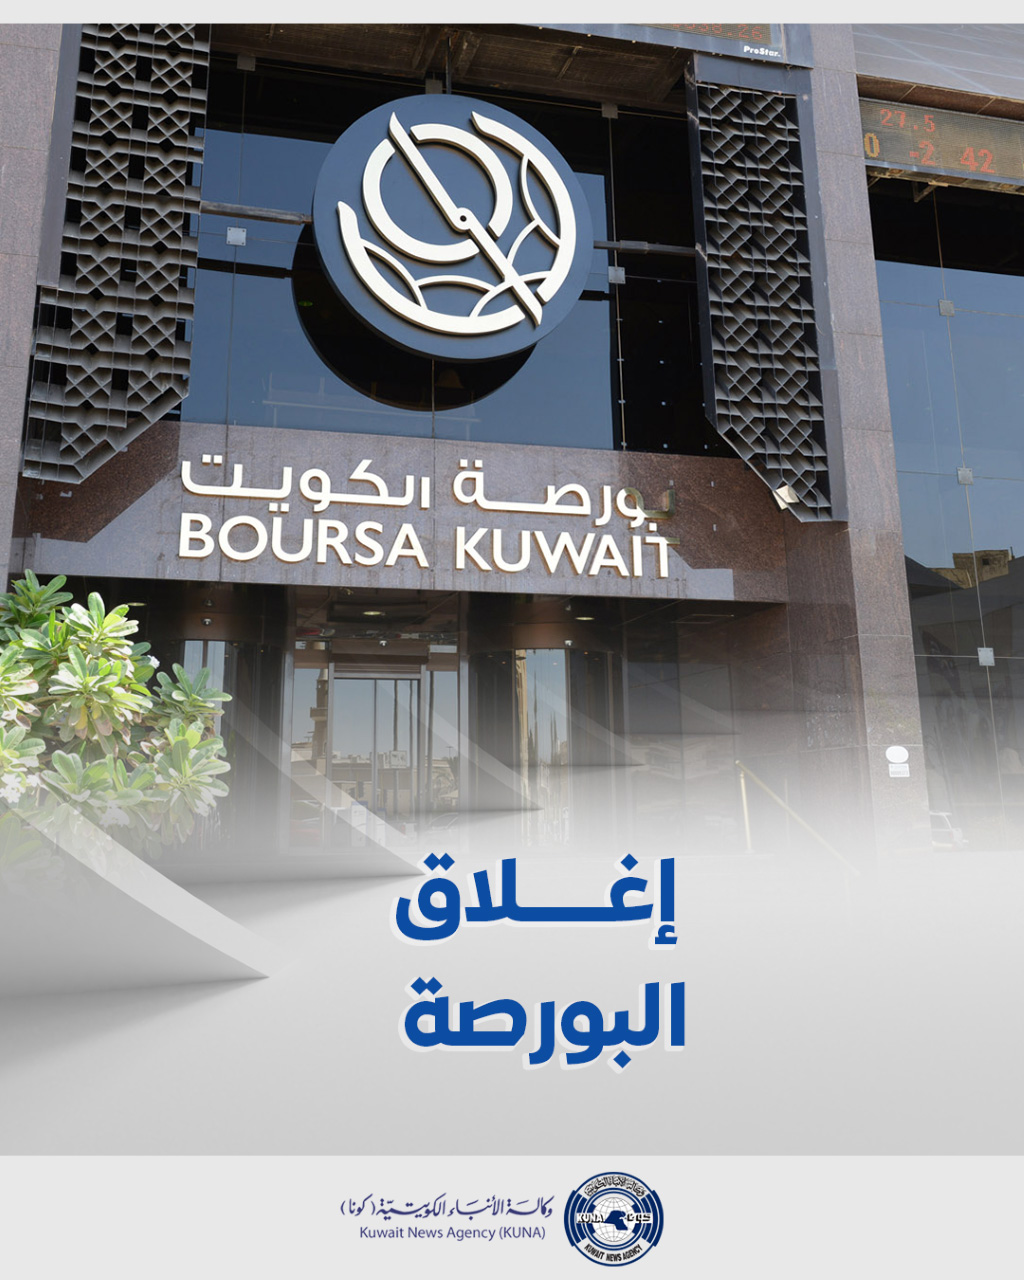 بورصة الكويت تغلق تعاملاتها على ارتفاع مؤشرها العام 3ر6 نقطة ليبلغ 66ر7336 بنسبة 09ر0 في المئة                                                                                                                                                            